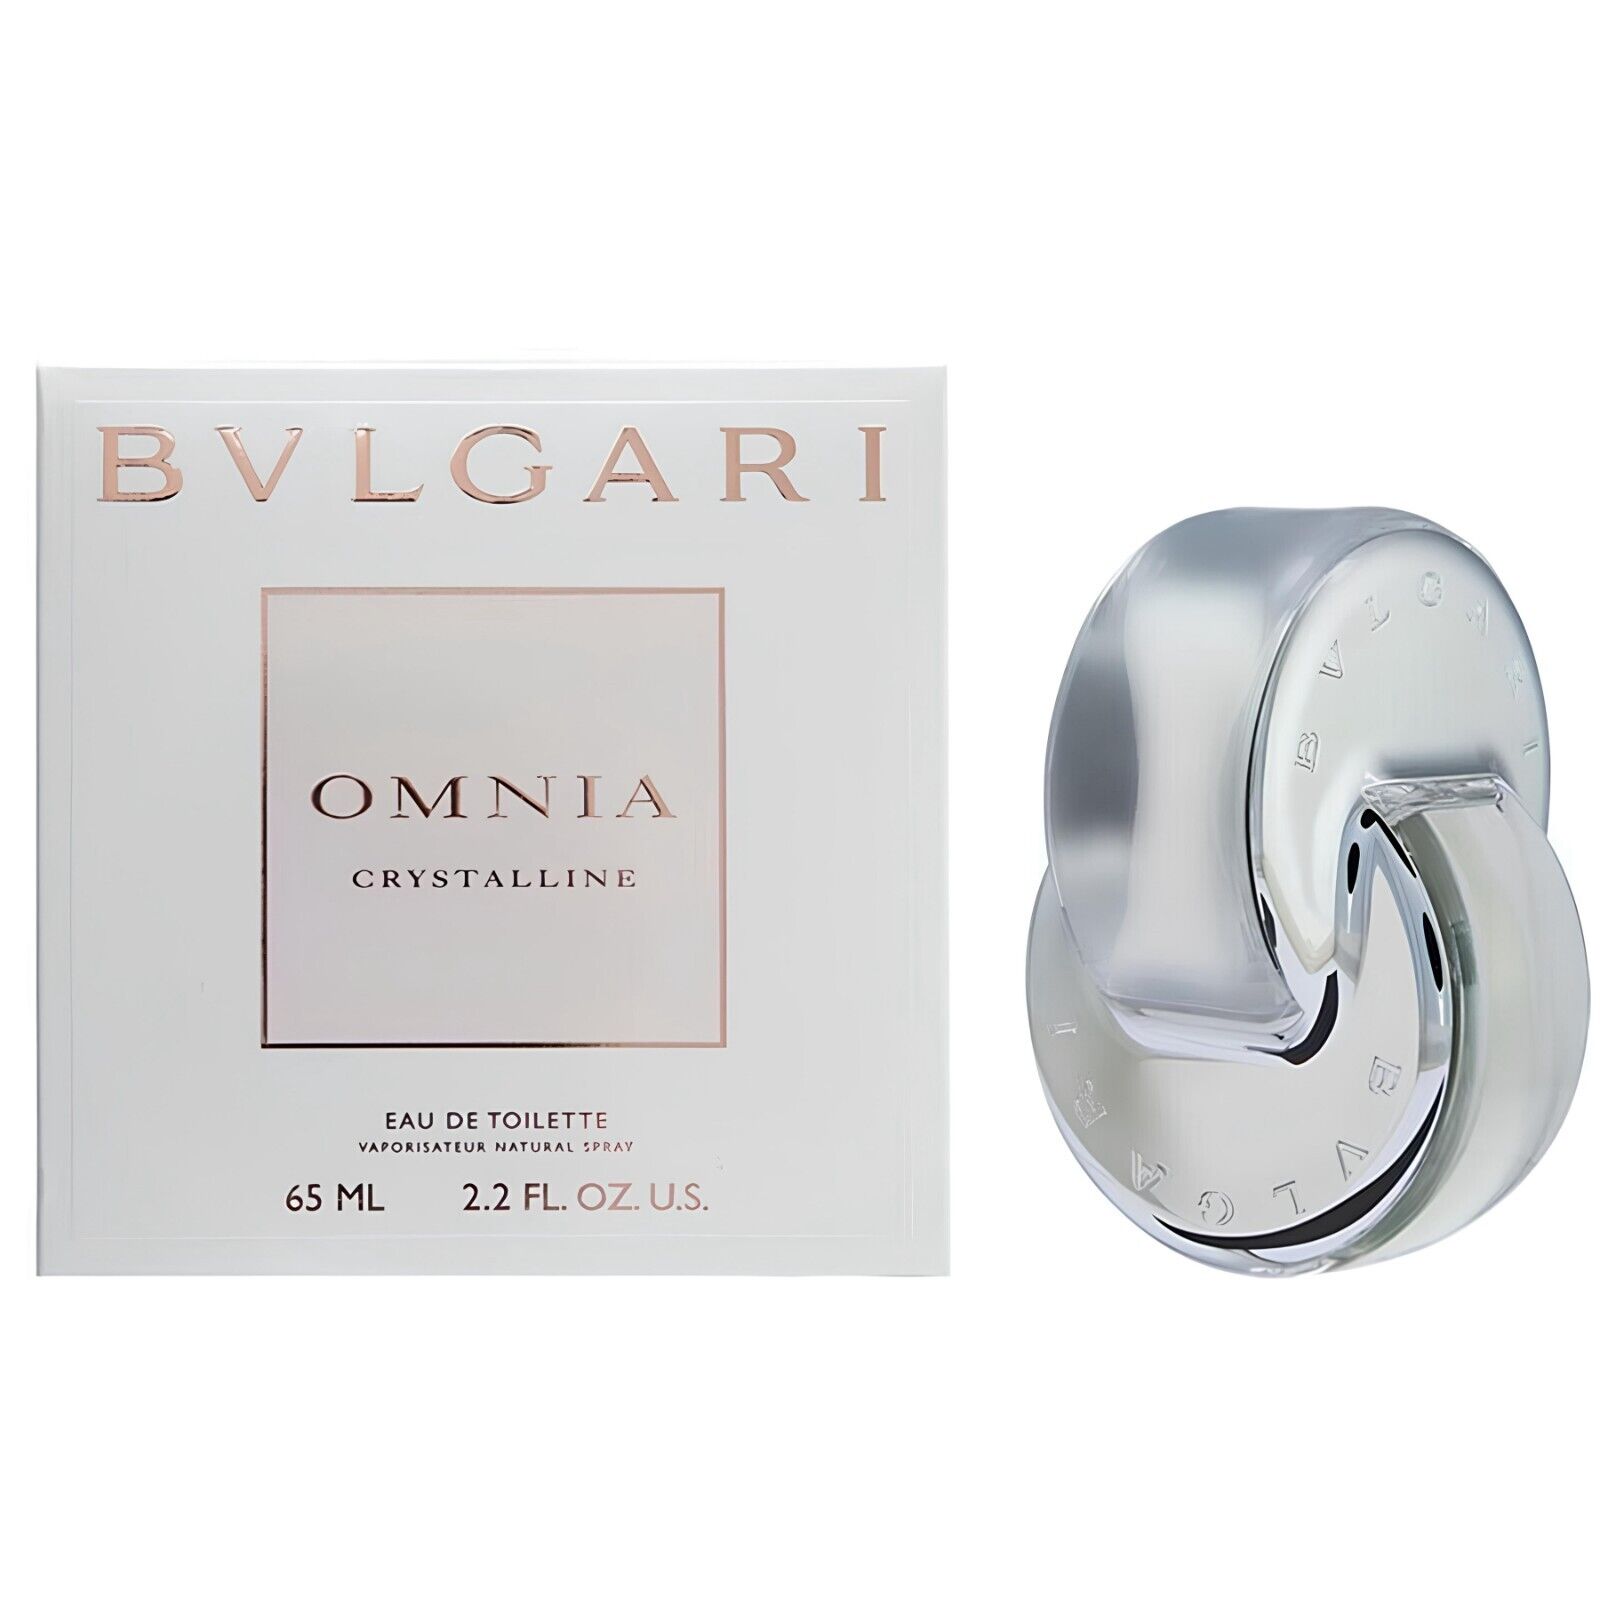 Bvlgari Omnia Crystalline Eau De Toilette Perfume Spray Women EDT 2.2 Oz 65ml